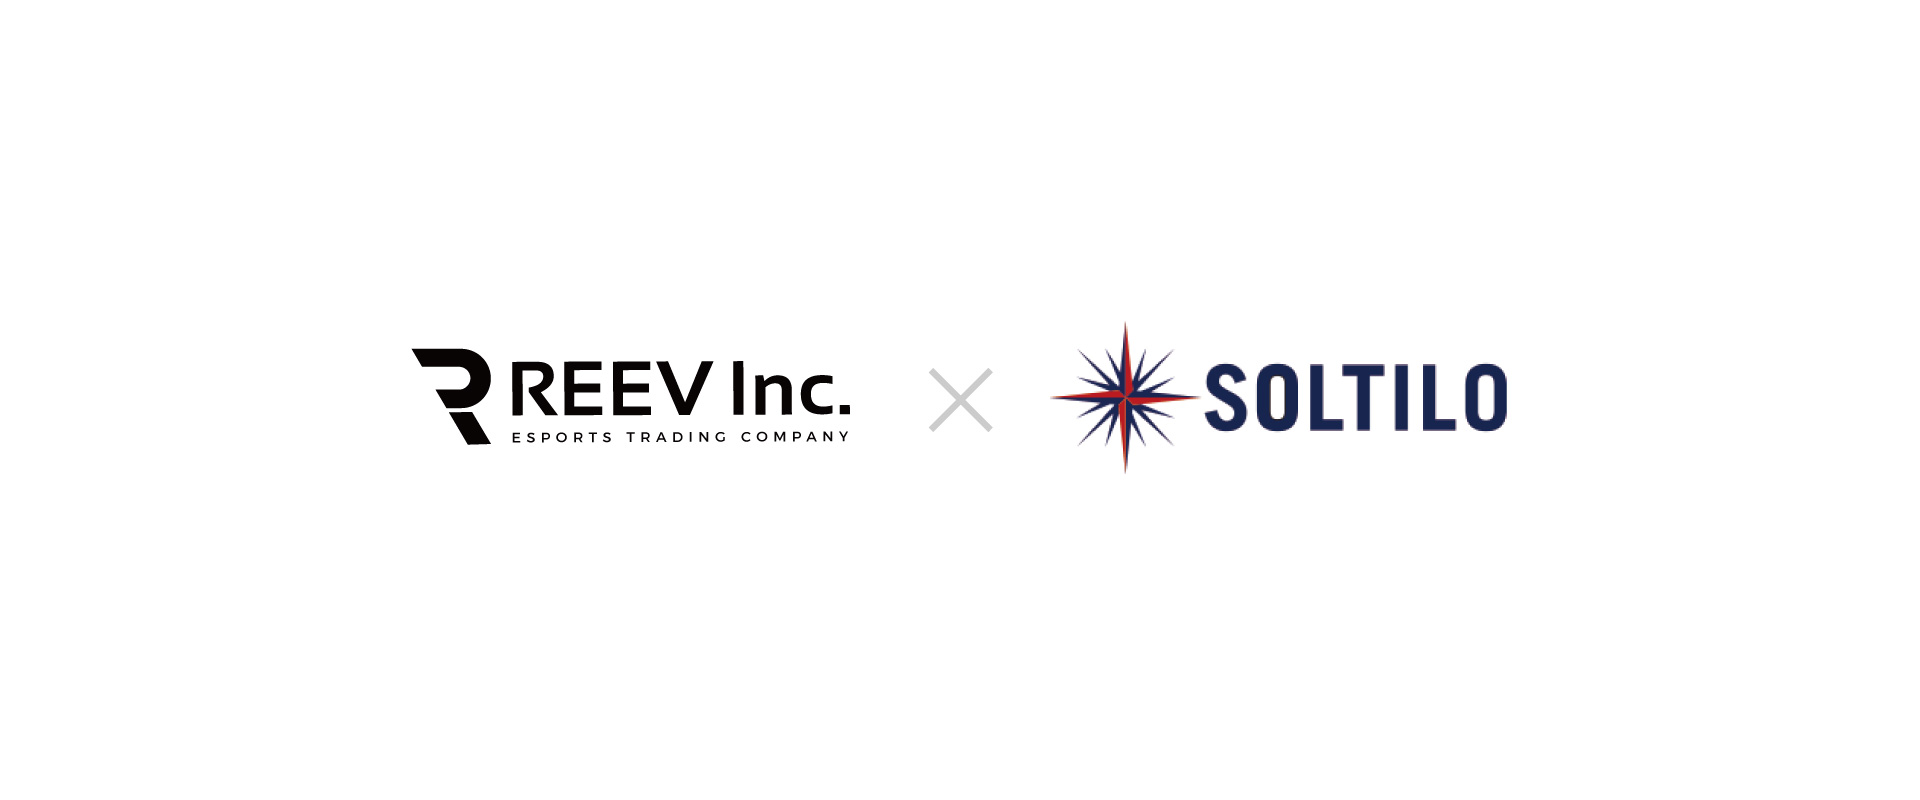 本田圭佑氏が運営に携わる「SOLTILO株式会社」と業務提携を結びました。